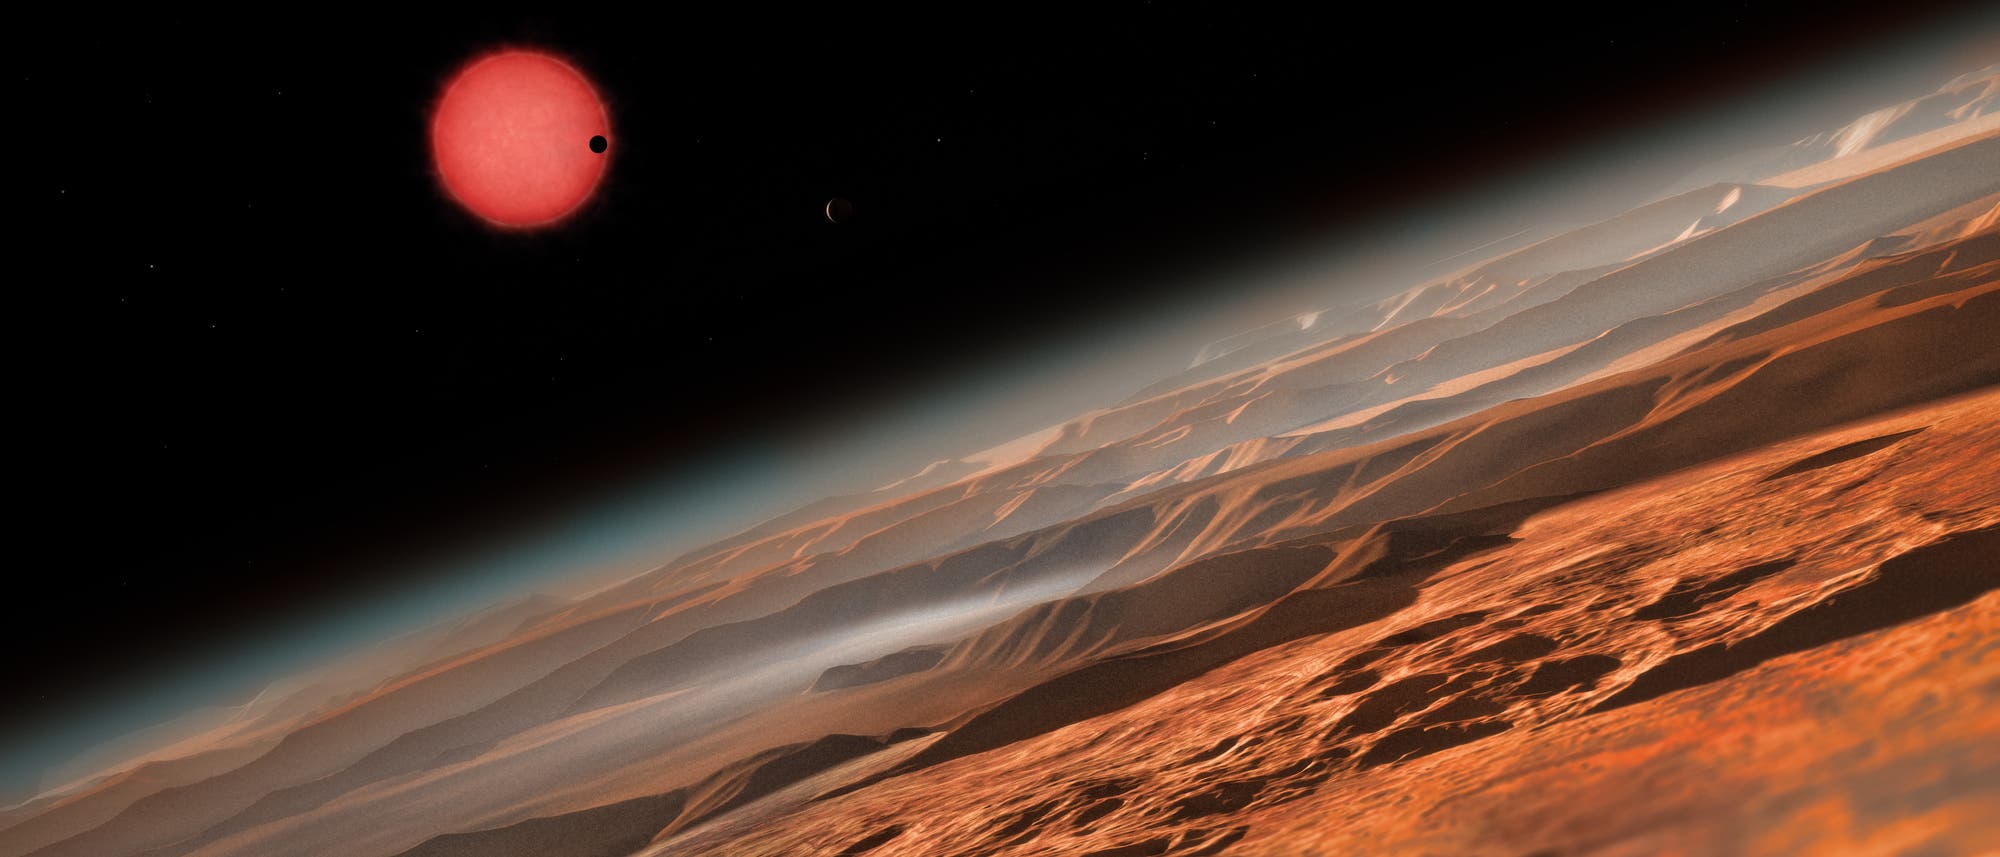 Künstlerische Darstellung des sehr kühlen Zwergsterns TRAPPIST-1 aus der Nähe eines seiner Planeten.